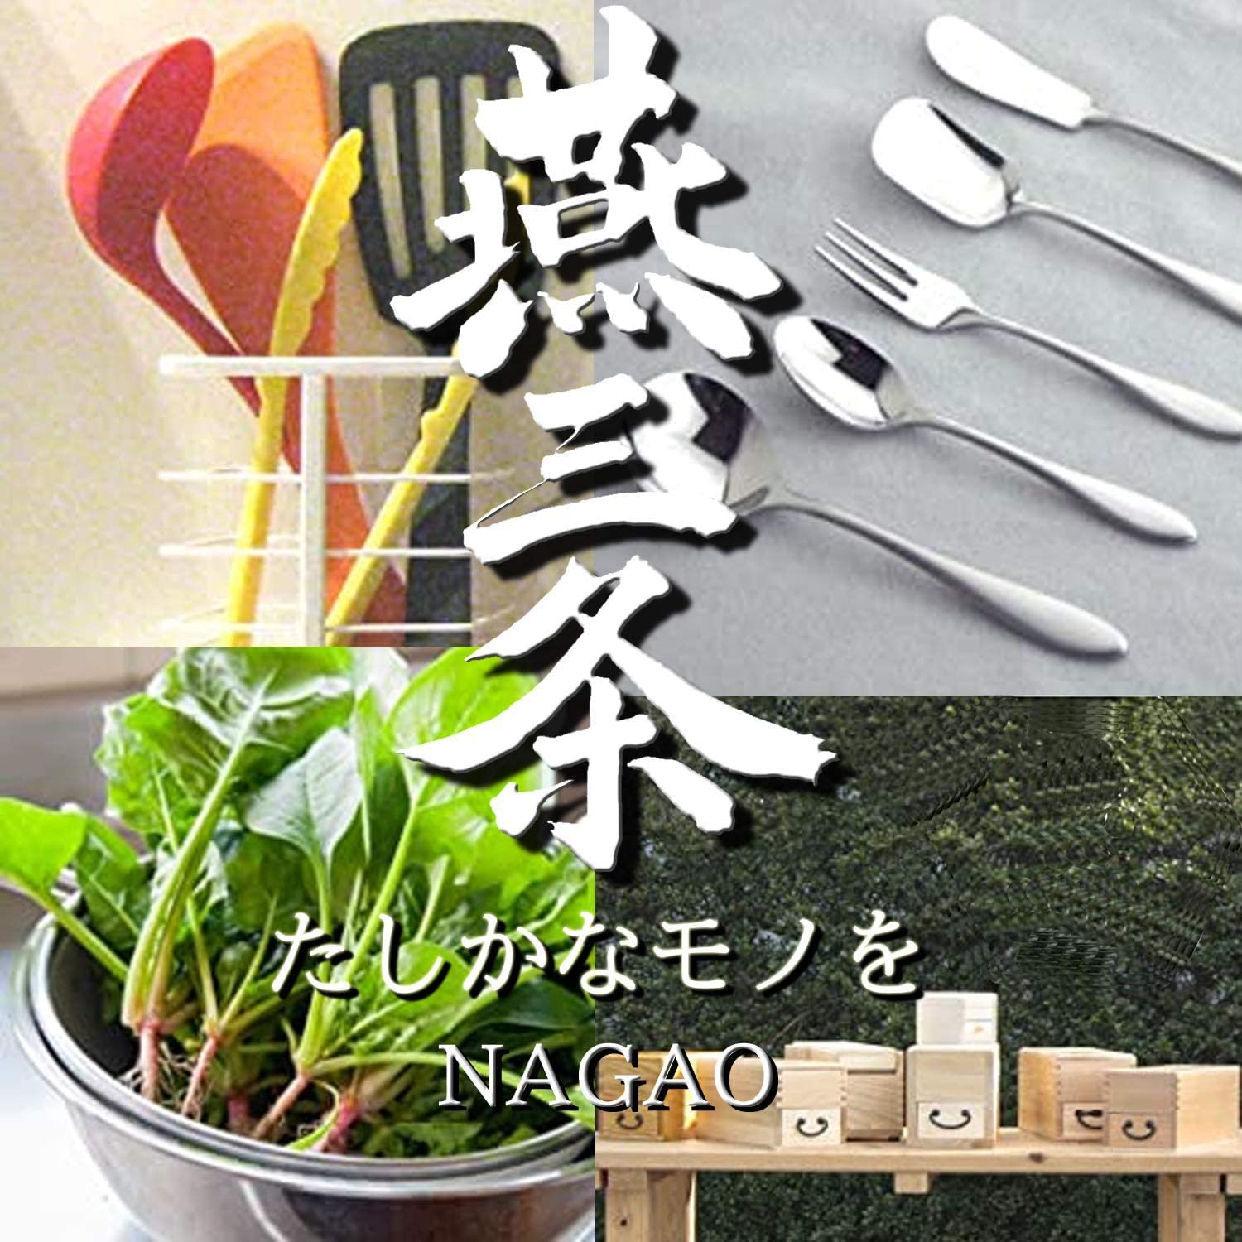 NAGAO(ナガオ) バースプーンの商品画像7 